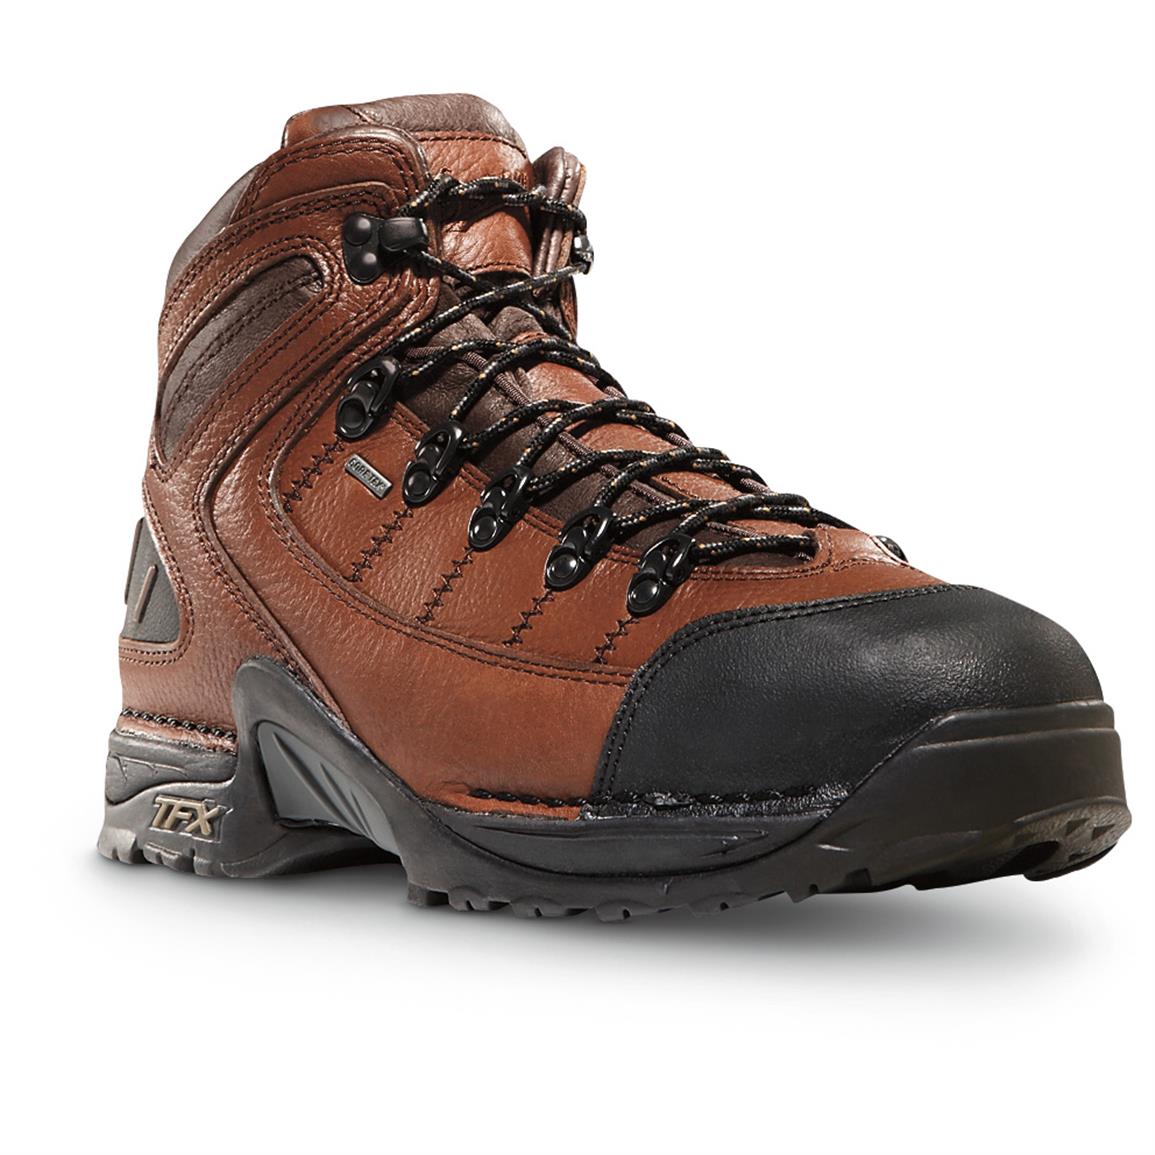 Danner 453 GORE-TEX Men's Steel Toe Work Boots, Brown - 639763, Work ...